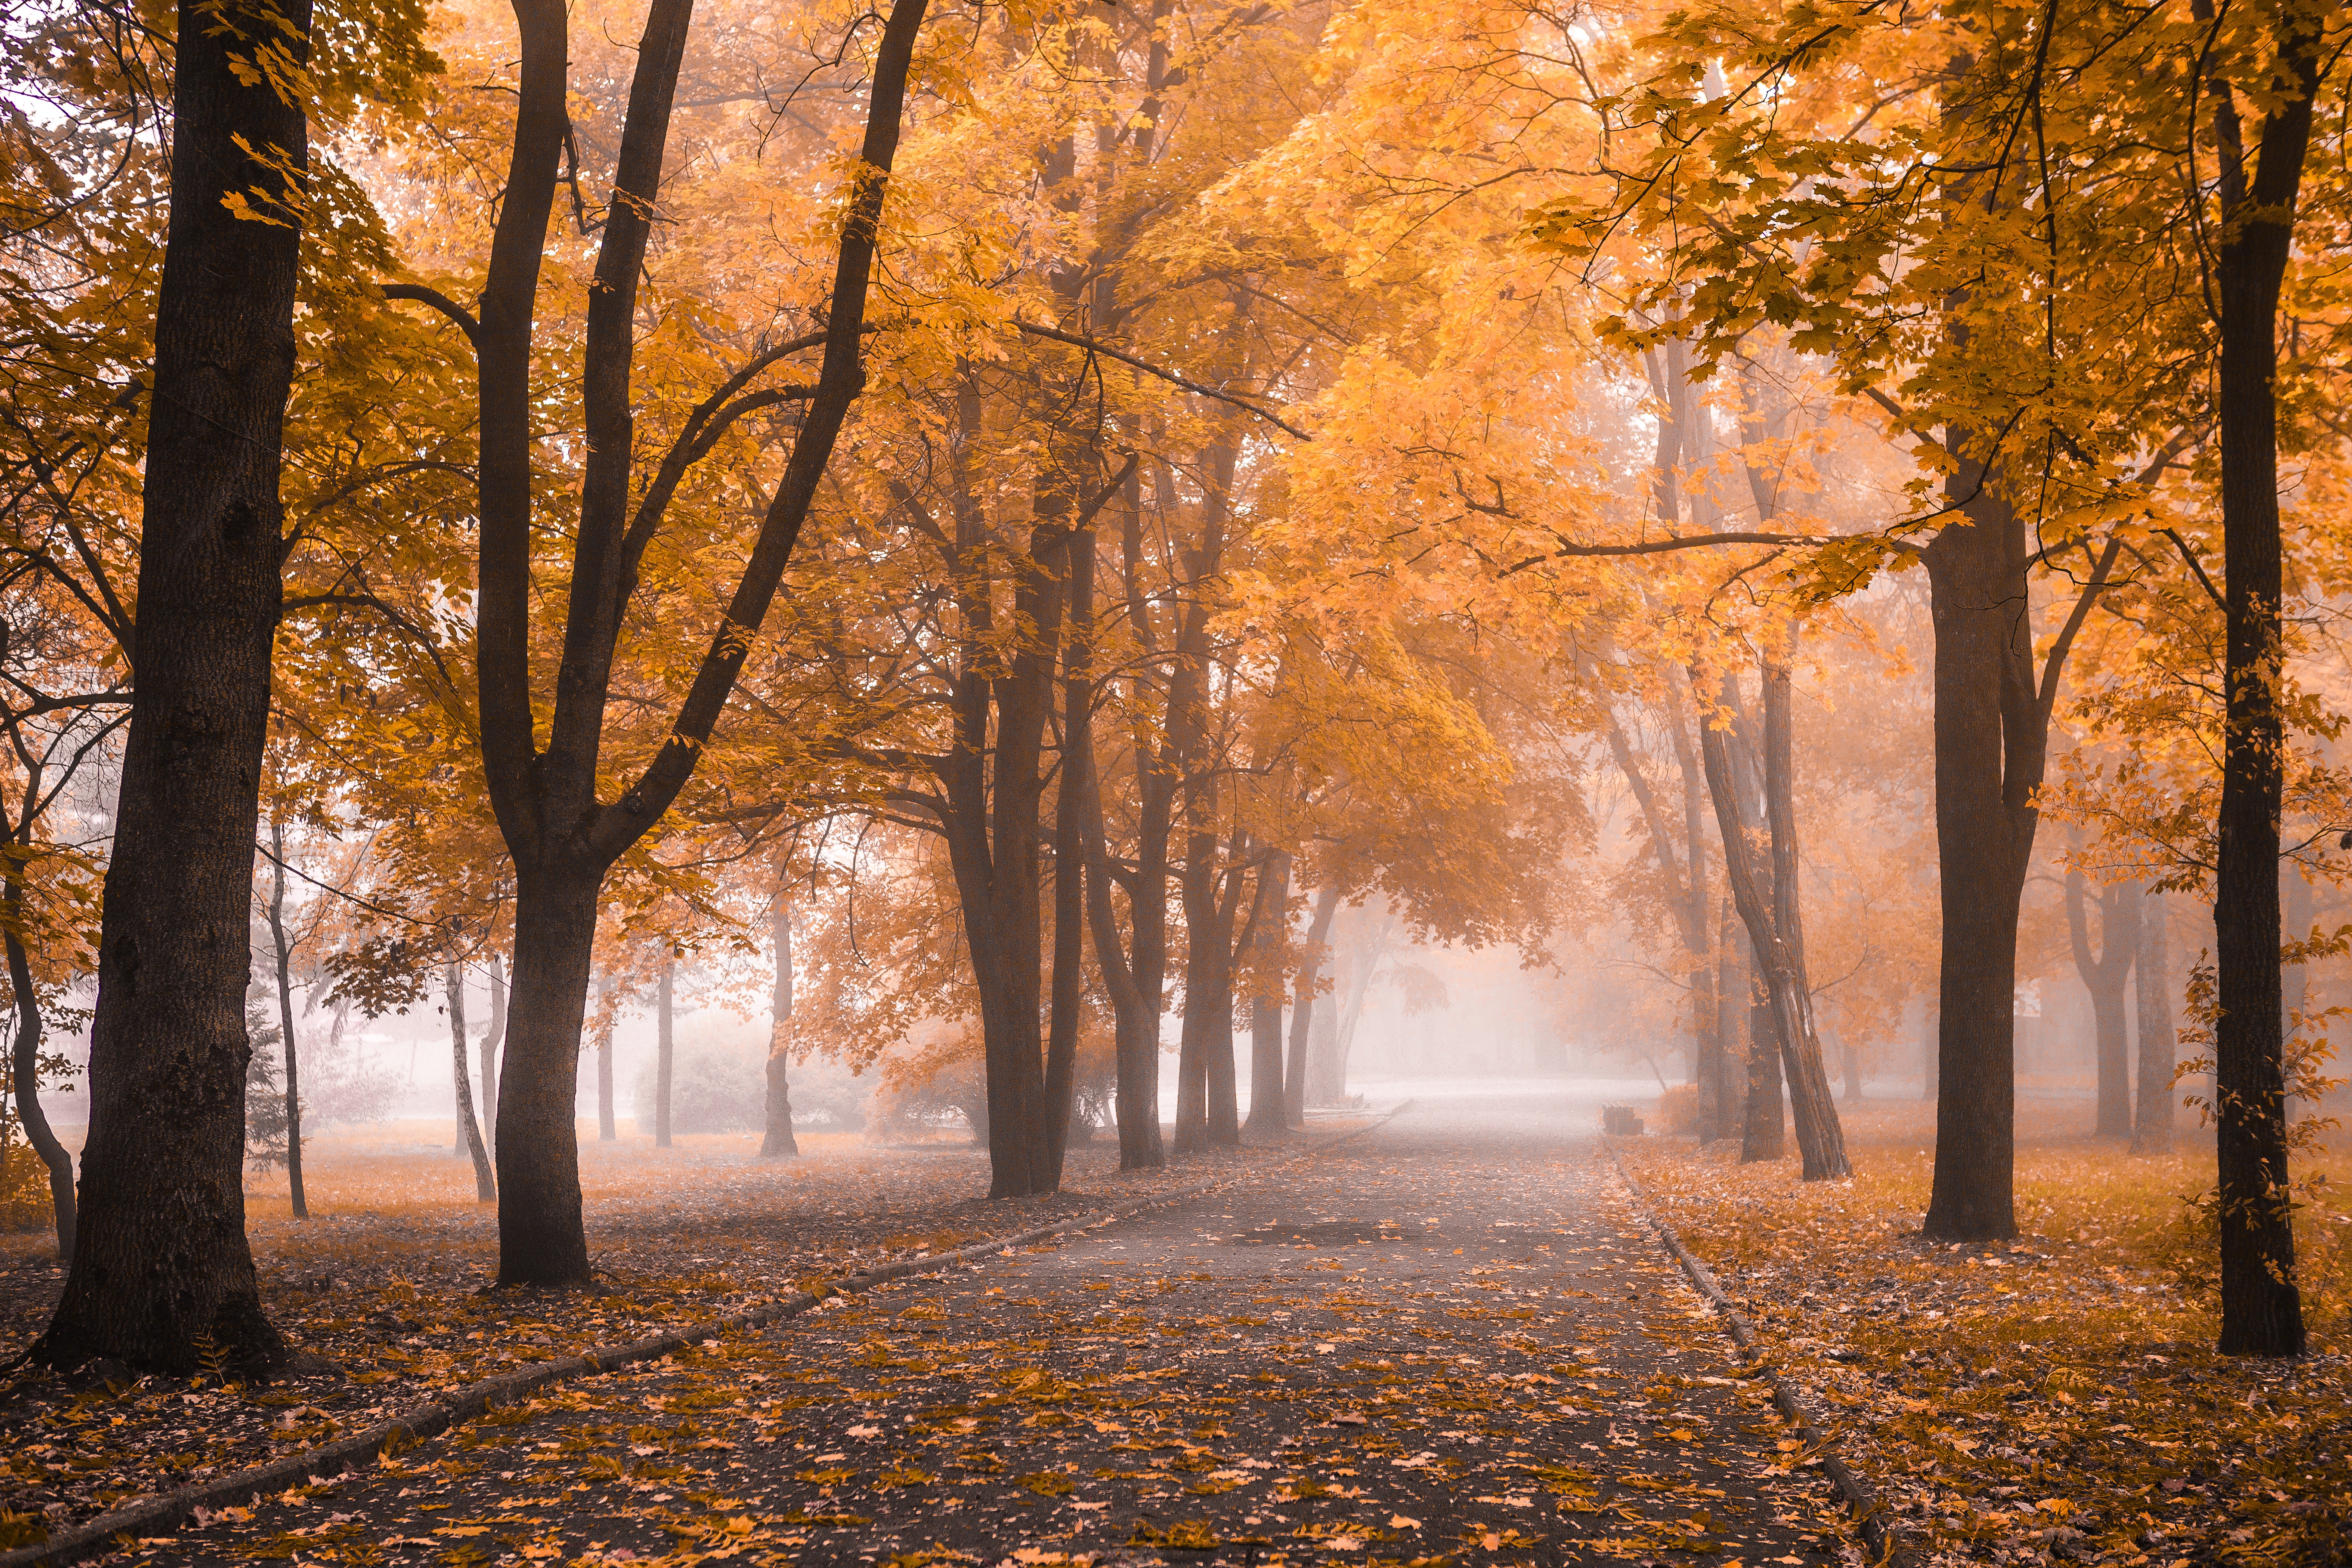 Скачать картинку Природа, Осень, Дорога, Парк, Дерево, Туман, Фотографии в телефон бесплатно.